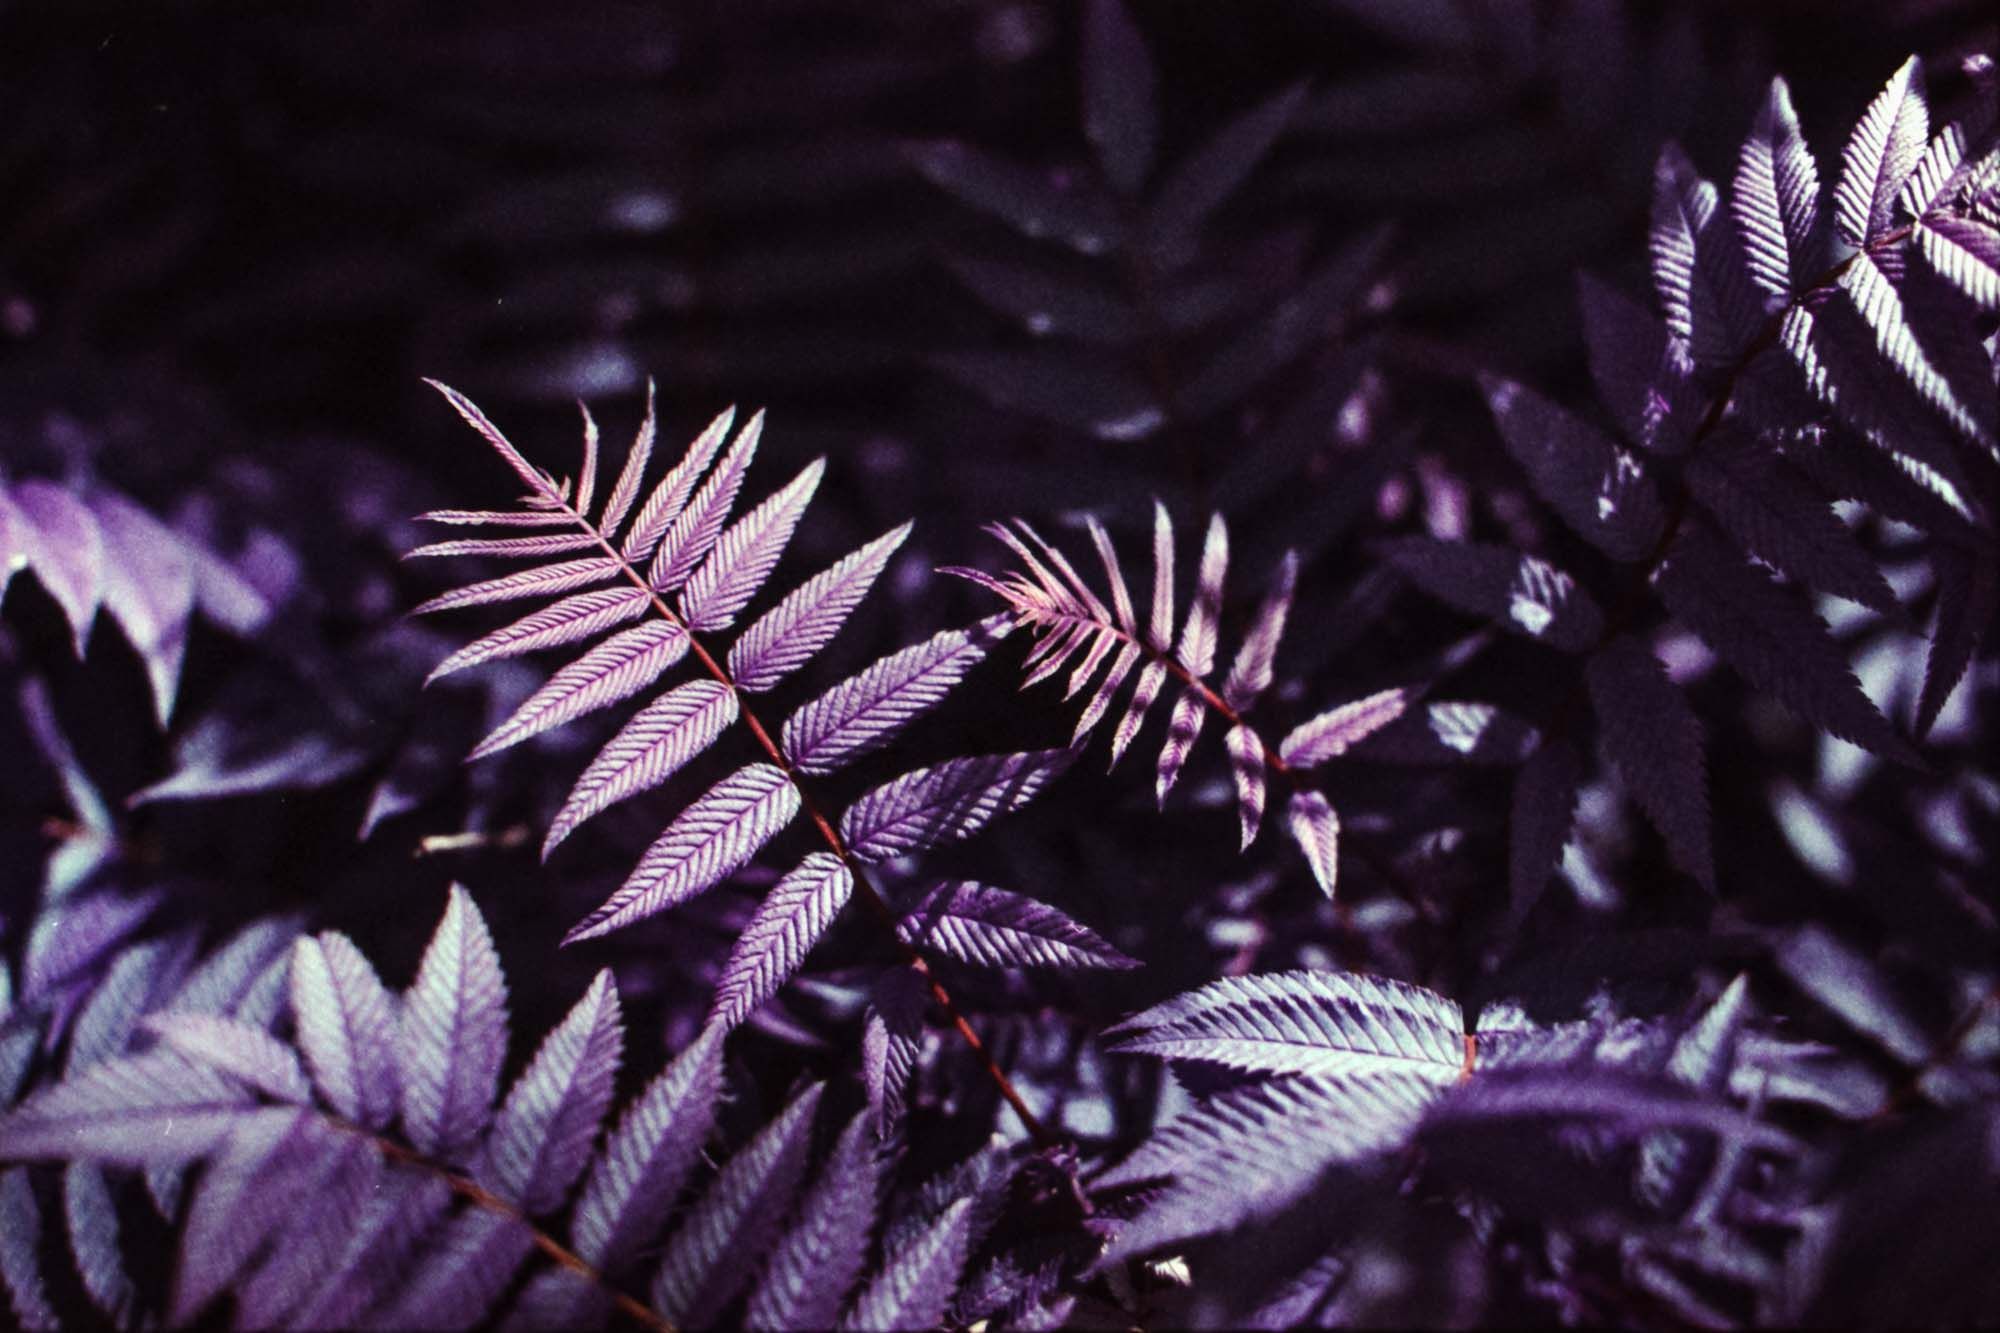 Fern in purple color.